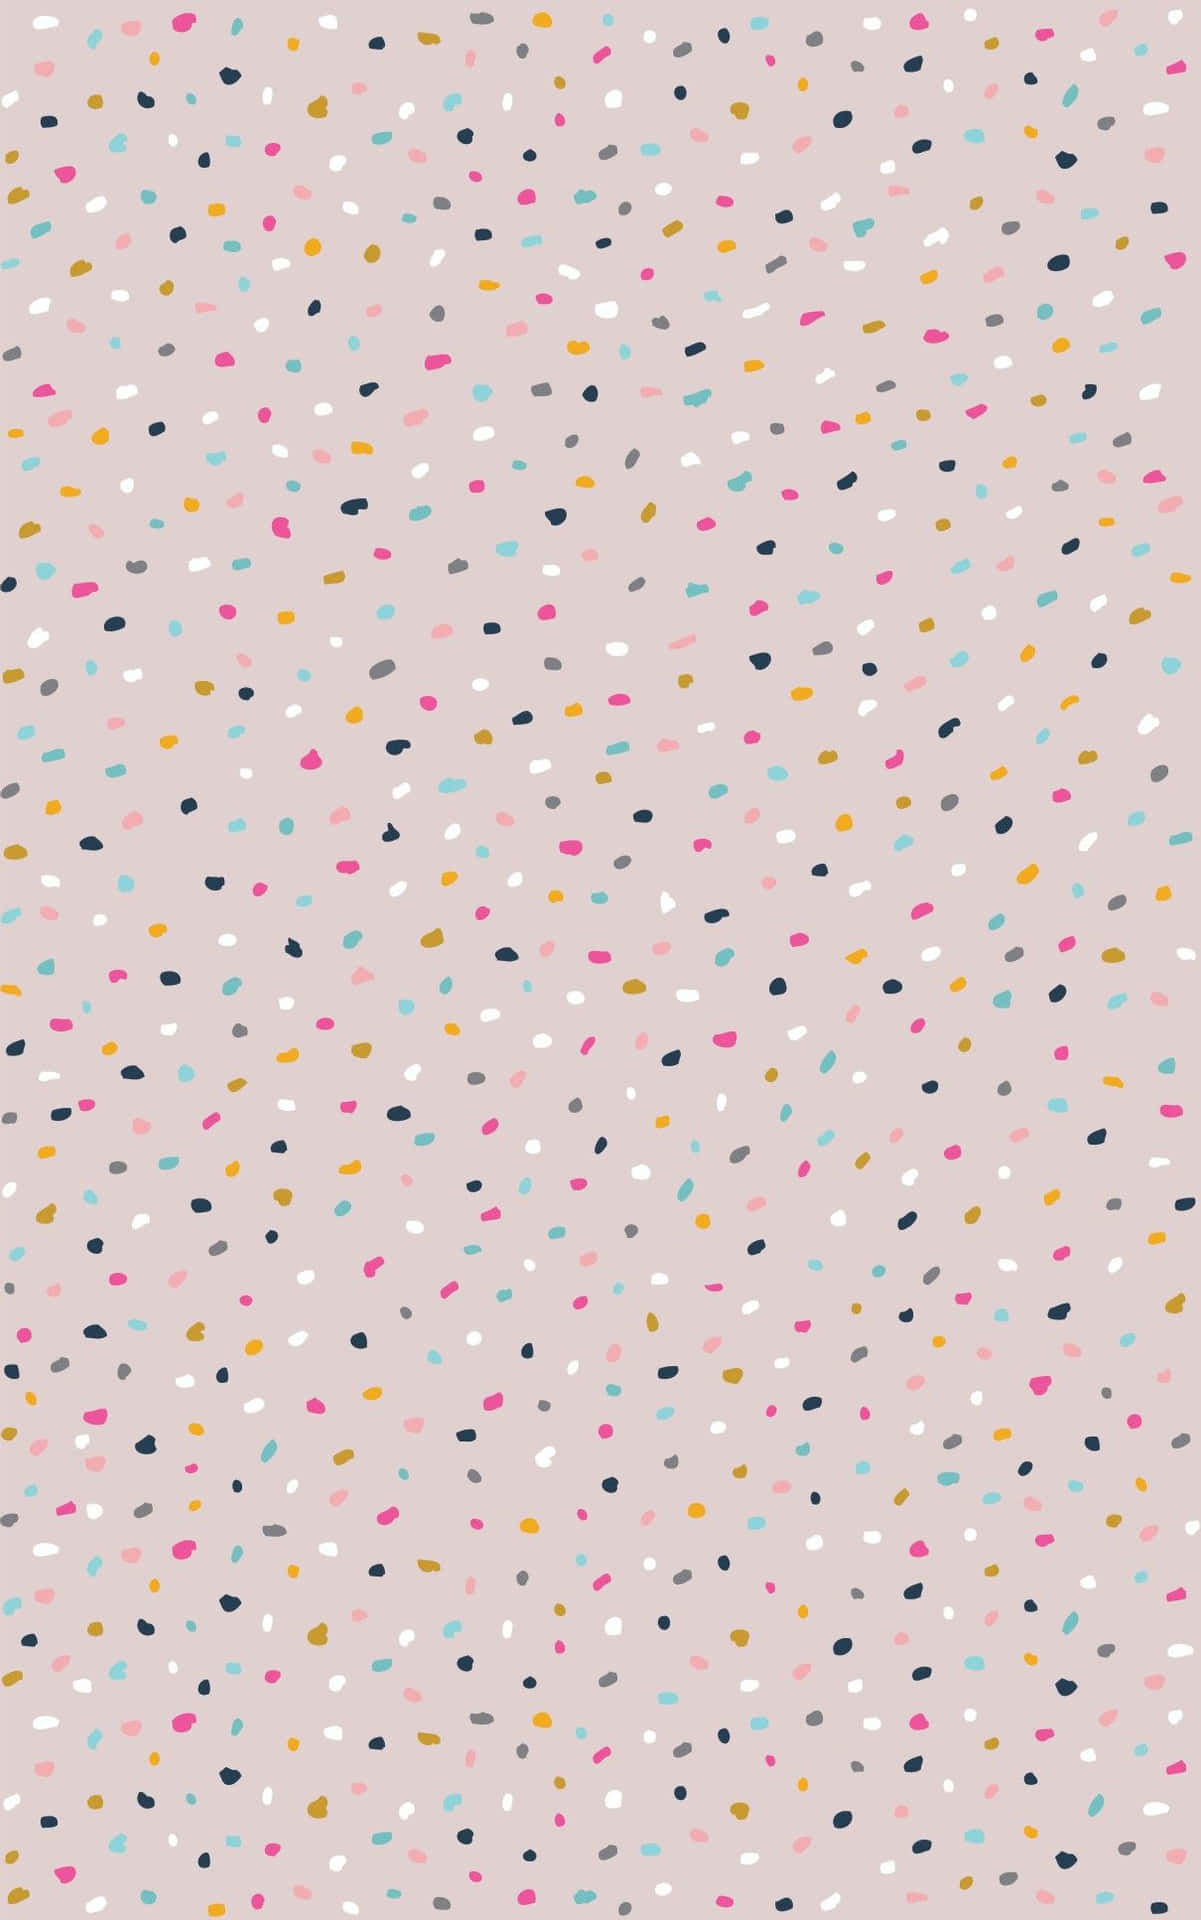 Einfachesparty-konfetti-muster Für Das Iphone Wallpaper